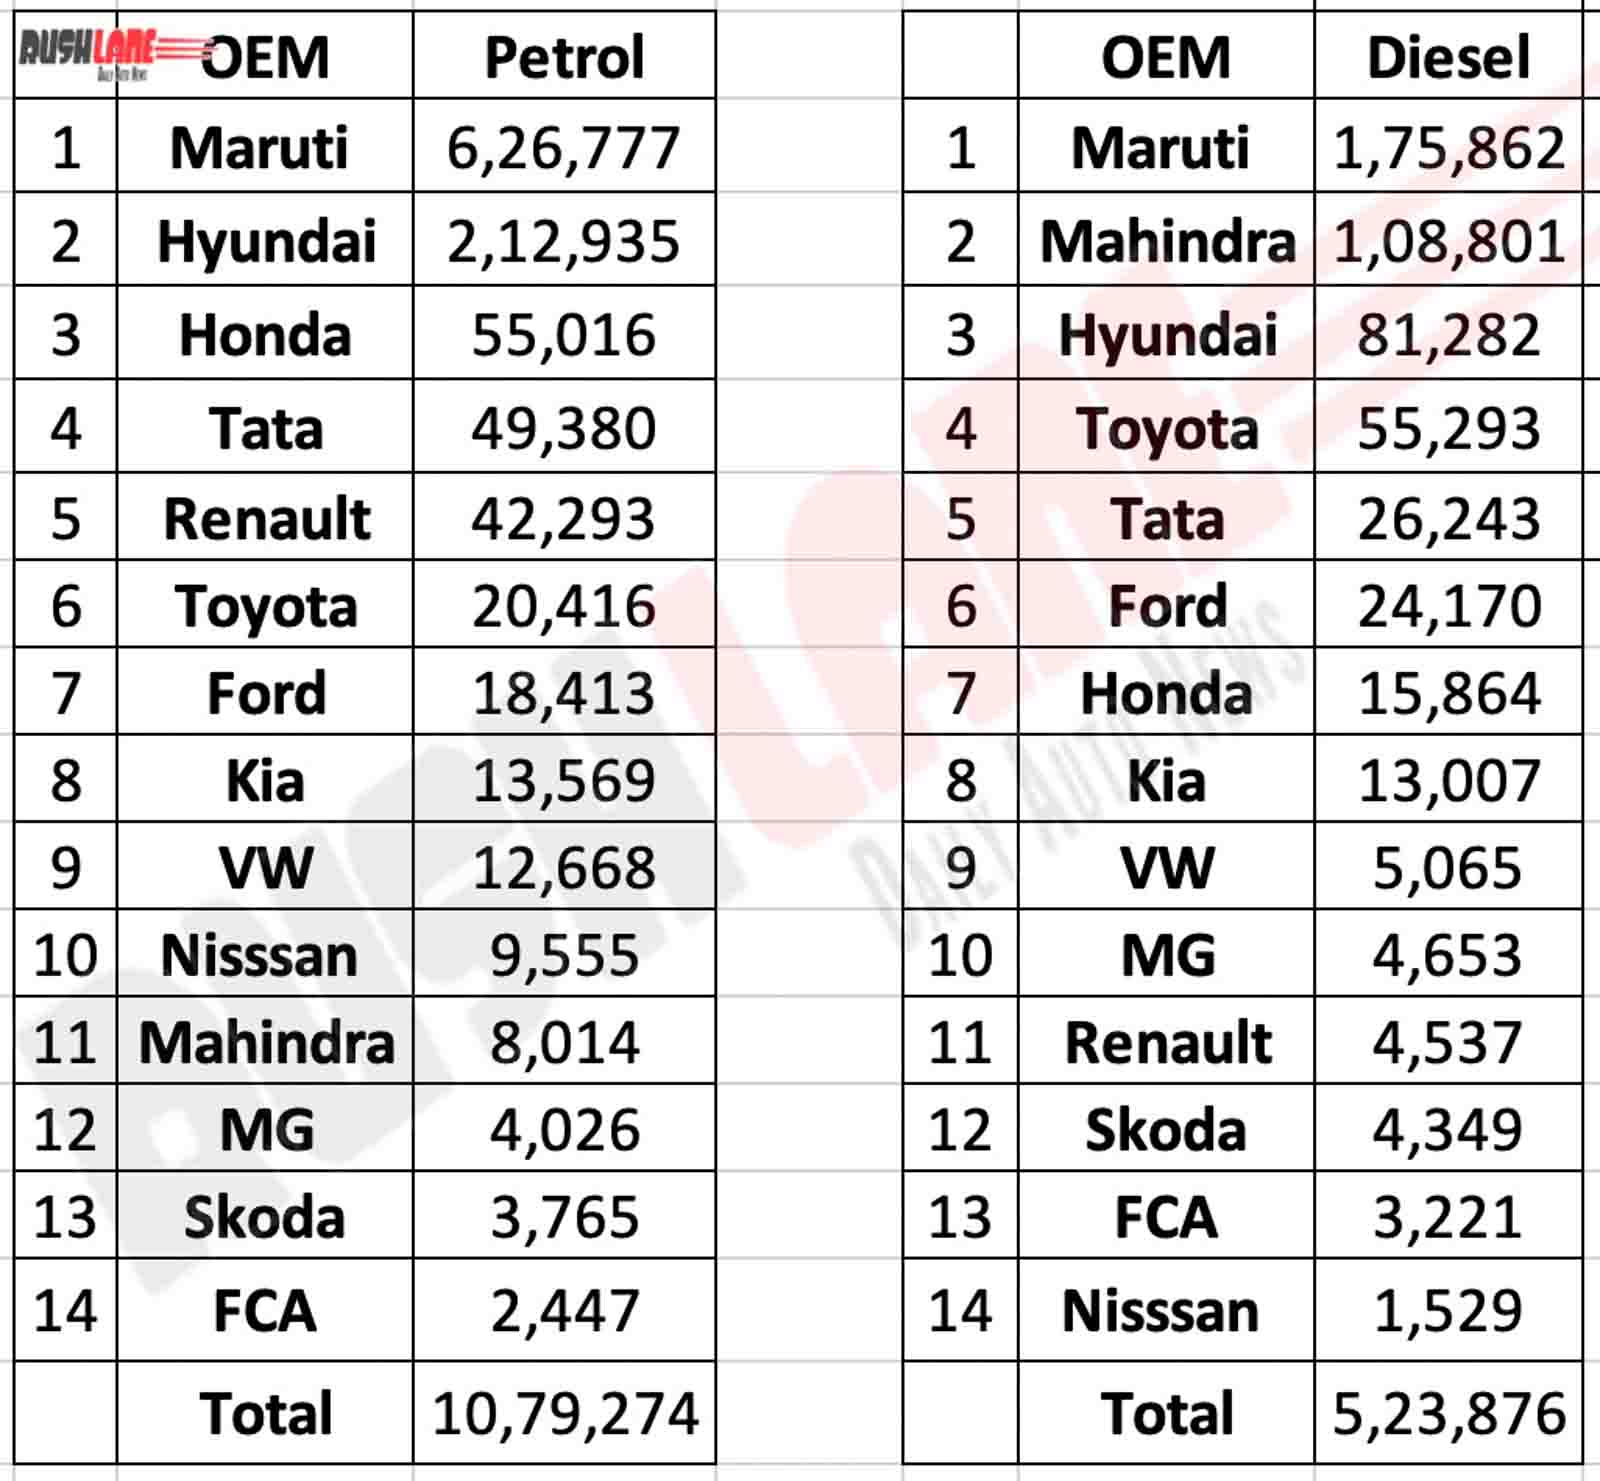 Petrol vs diesel car sales 2019